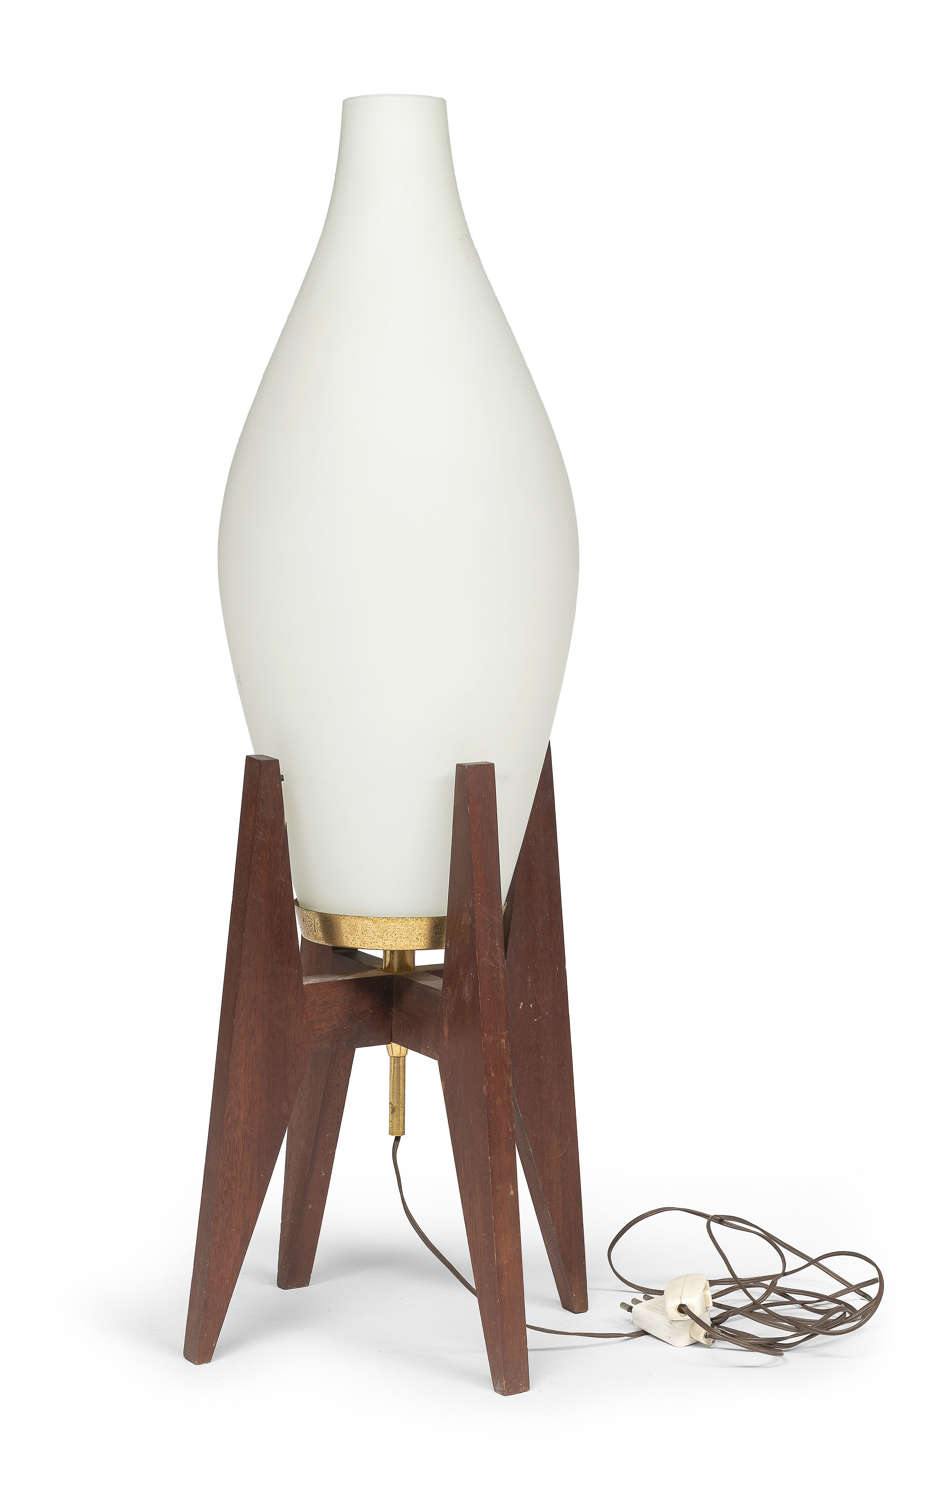 Claudio Salocchi table lamp